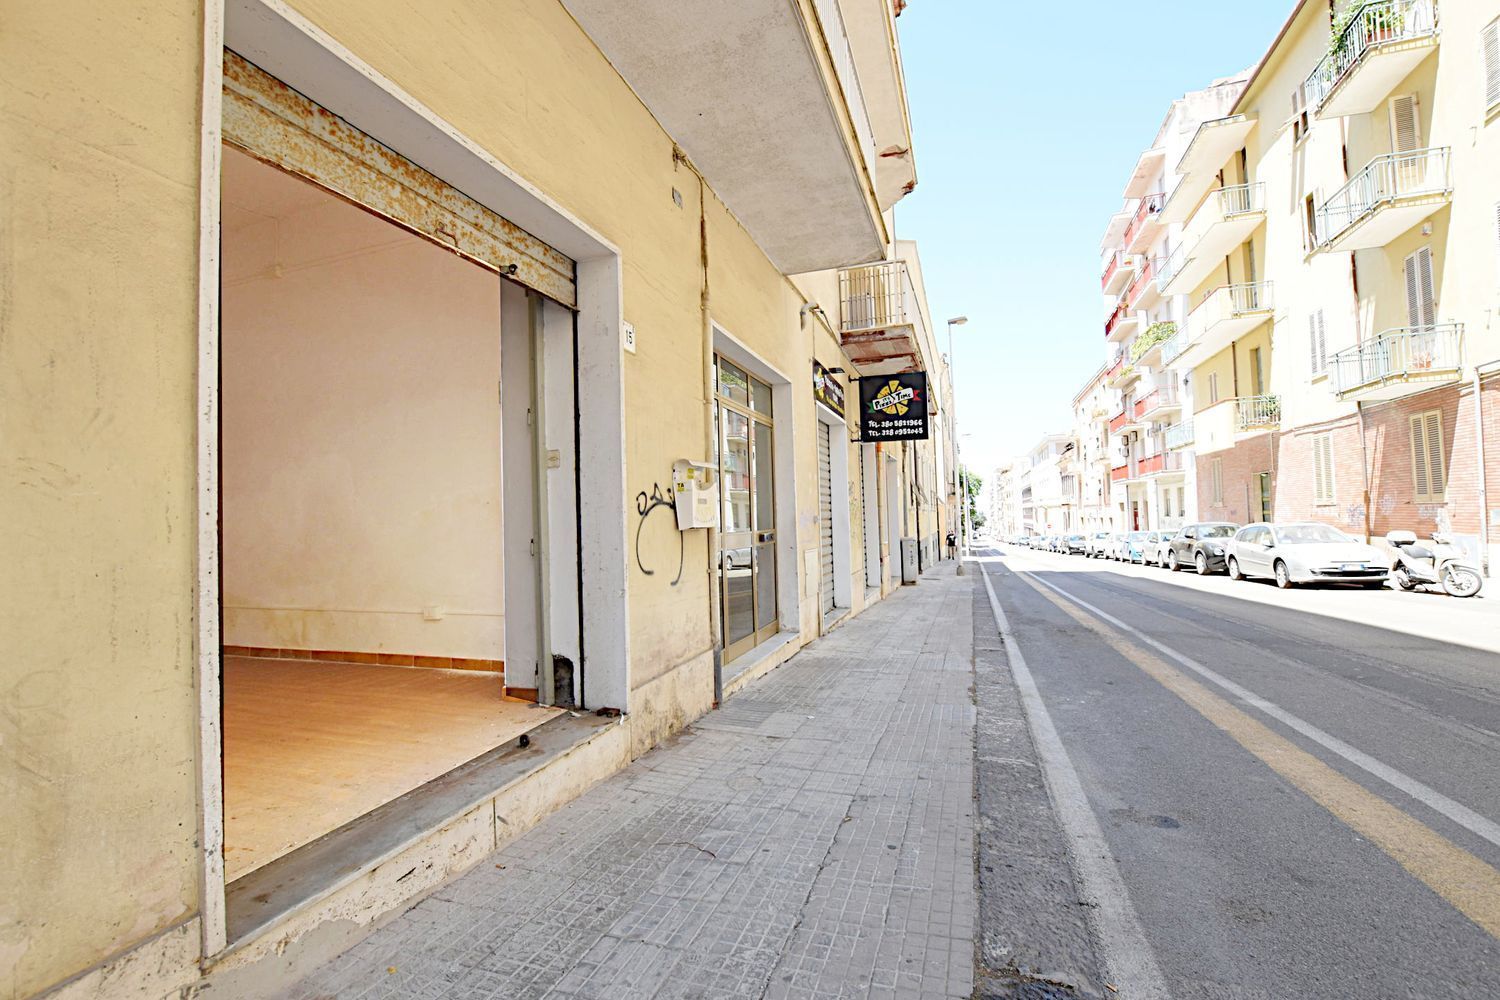 Immobile Commerciale in vendita a Sassari, 9999 locali, prezzo € 38.000 | PortaleAgenzieImmobiliari.it